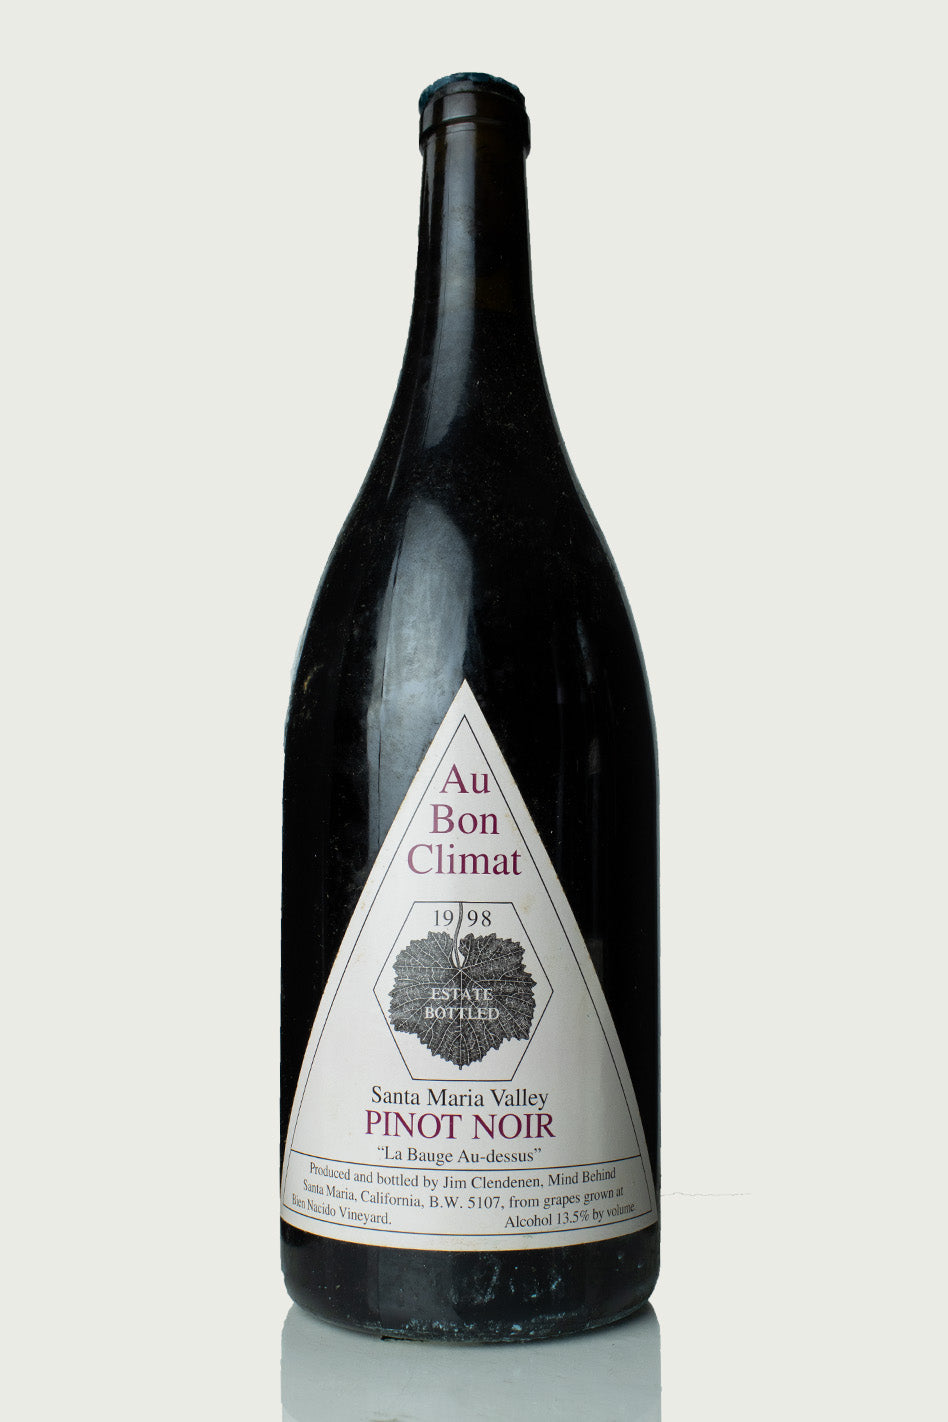 Au Bon Climat 'La Bauge Au-dessus' Pinot Noir Magnum 1998